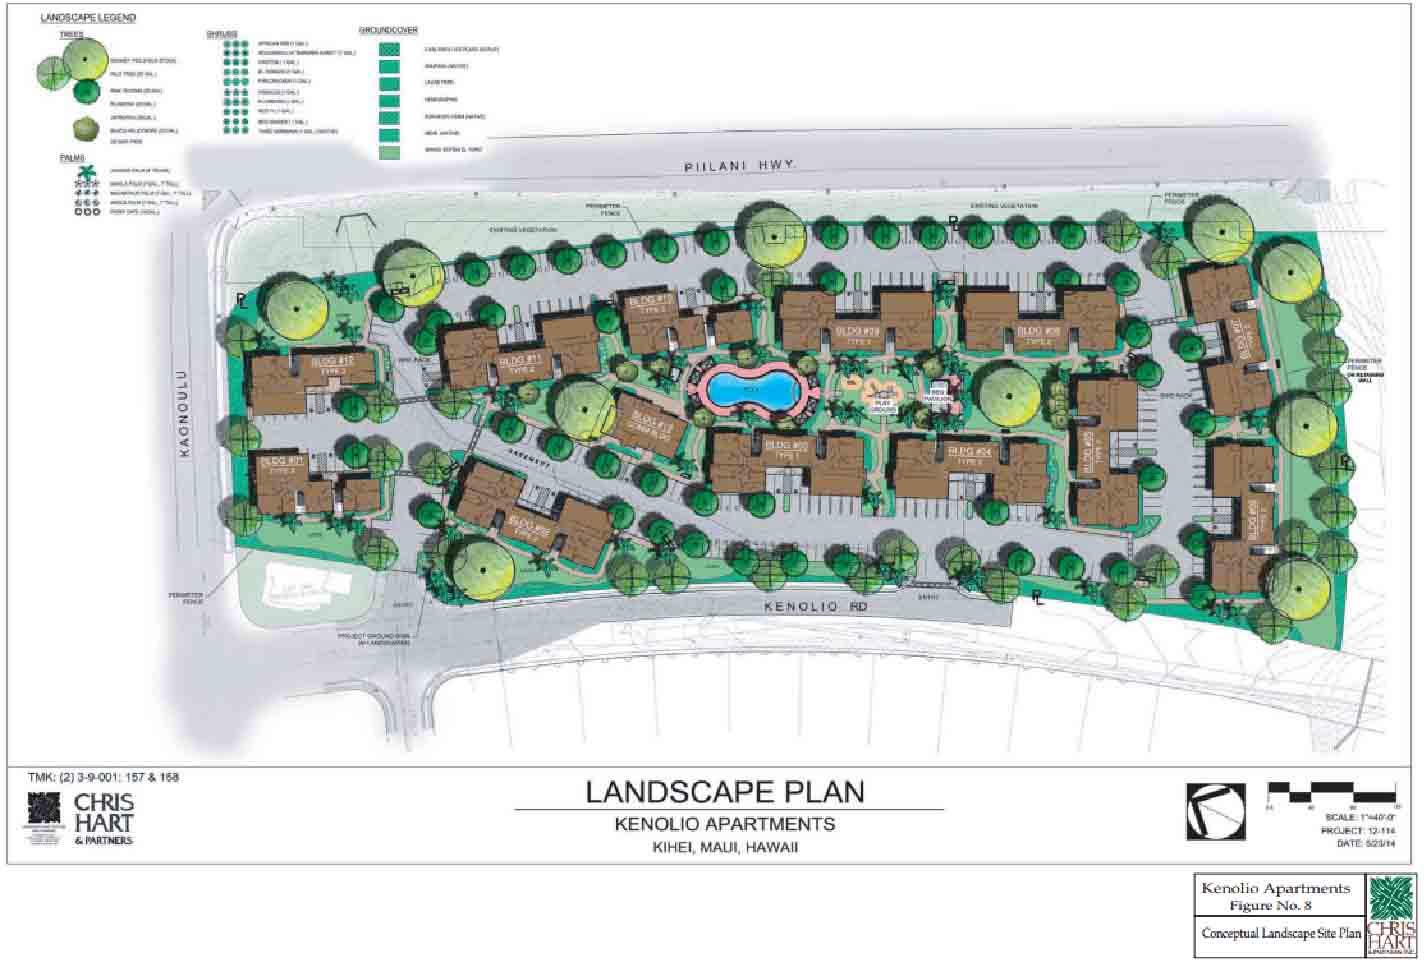 Kenolio landscape plan. Image credit: Chris Hart & Partners via Office of Council Services.